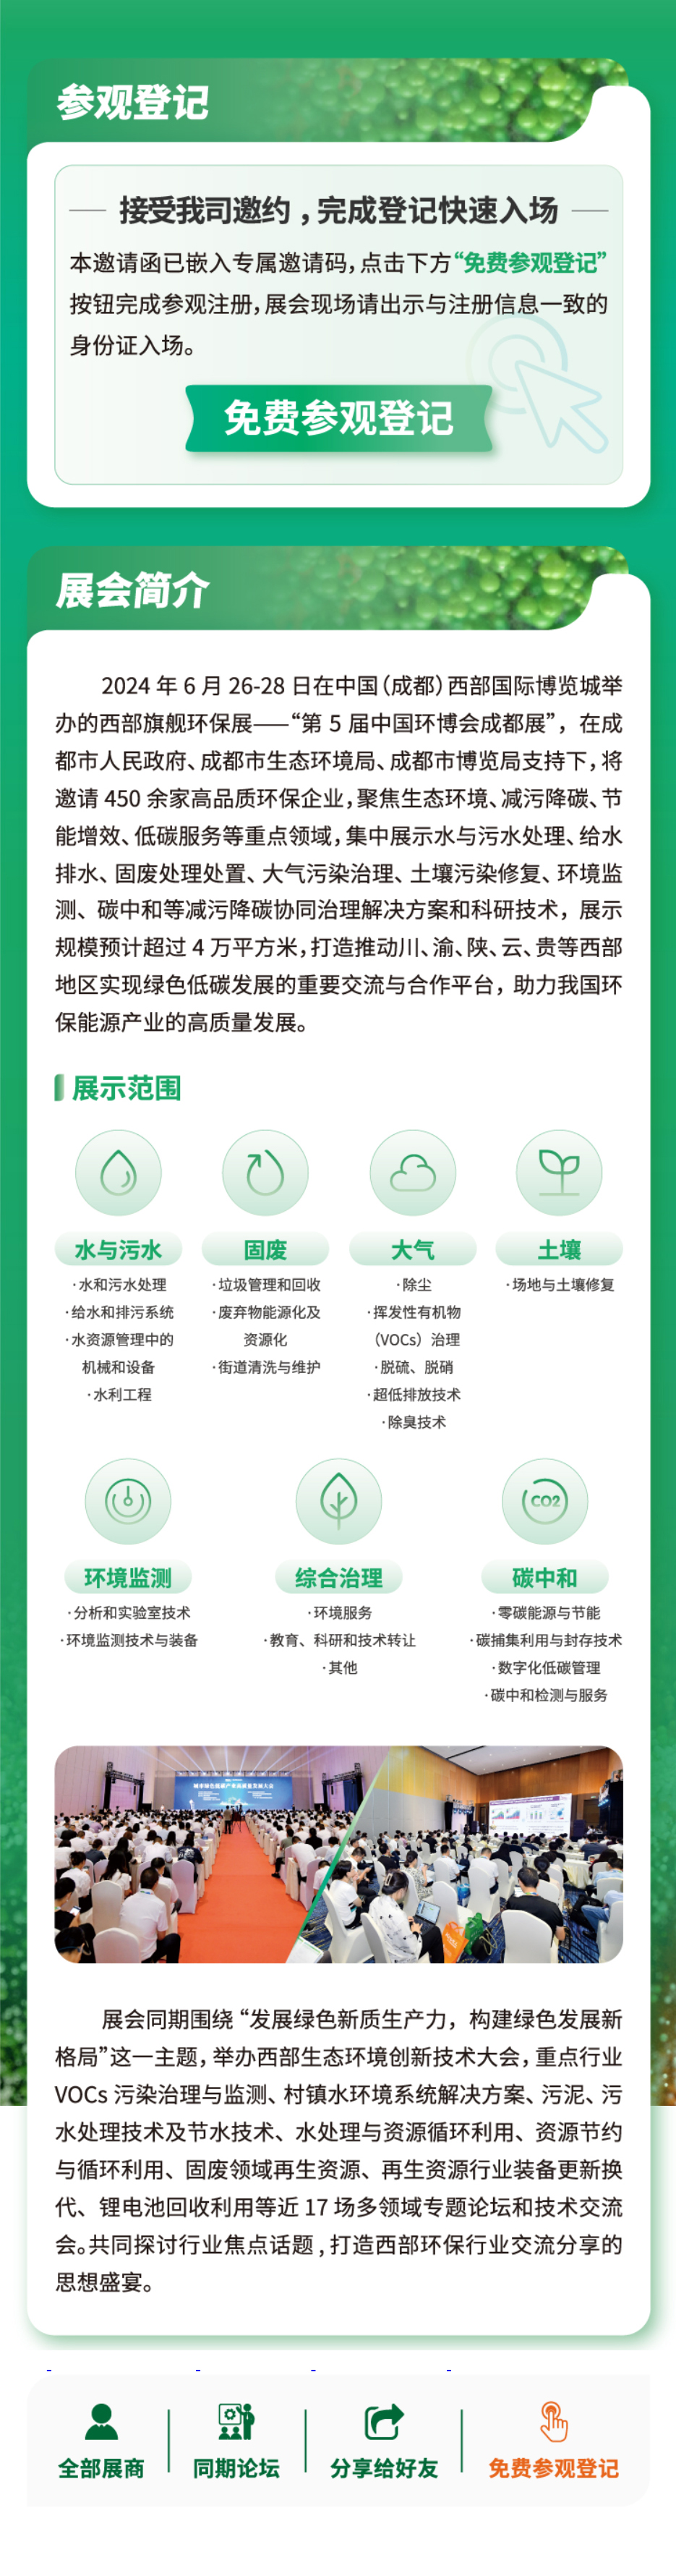 青岛碧析环保仪器有限公司6月26-28日 与您相约中国西部国际博览城中国环博会(图2)